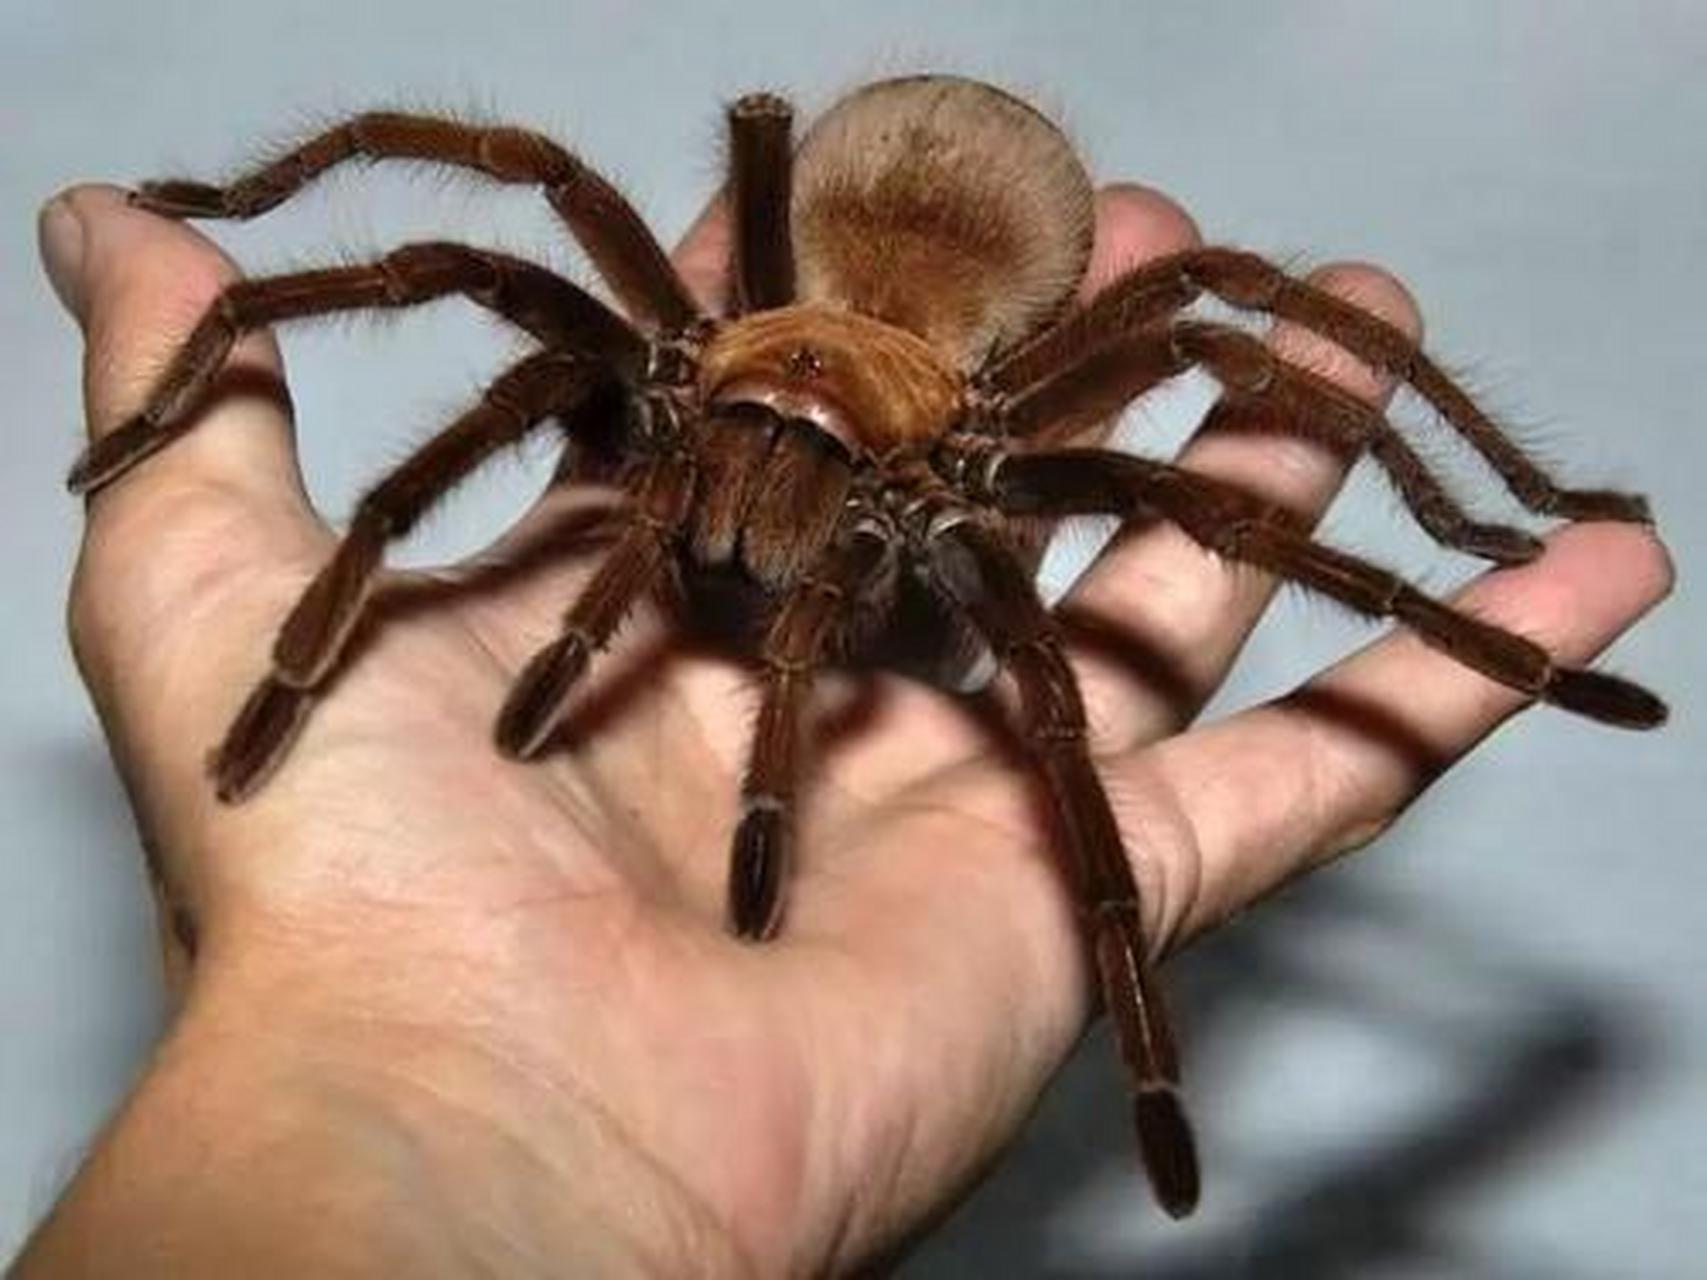 【世界上最大的蜘蛛】亚马逊巨人食鸟蛛,是世界上最